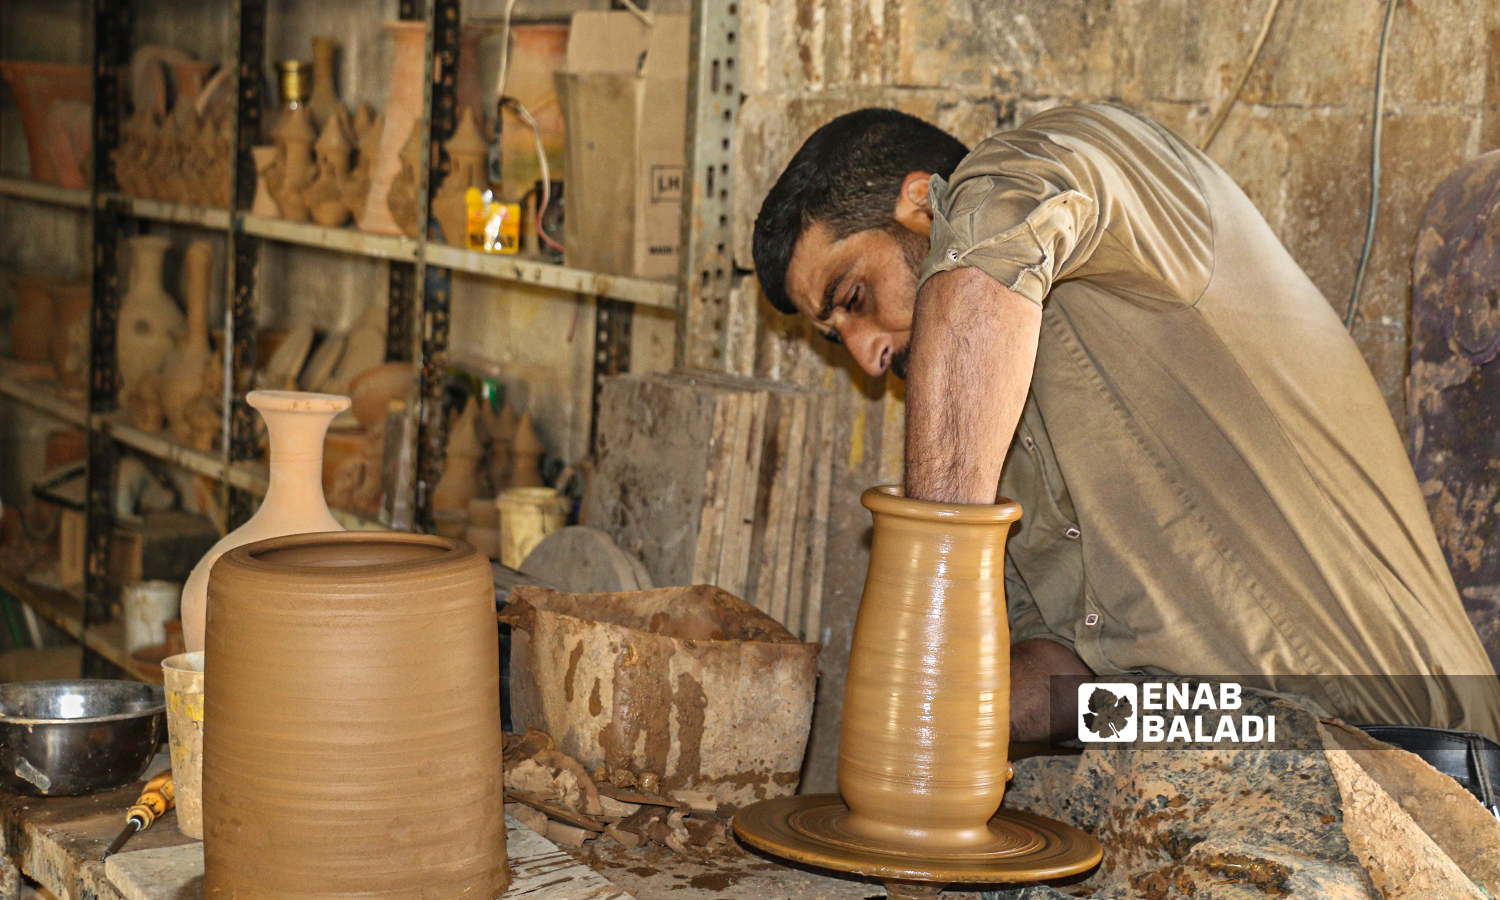 حرفي يقوم بصناعة أواني فخارية في بلدة أرمناز- 1شباط 2022 (إياد عبد الجواد / عنب بلدي )